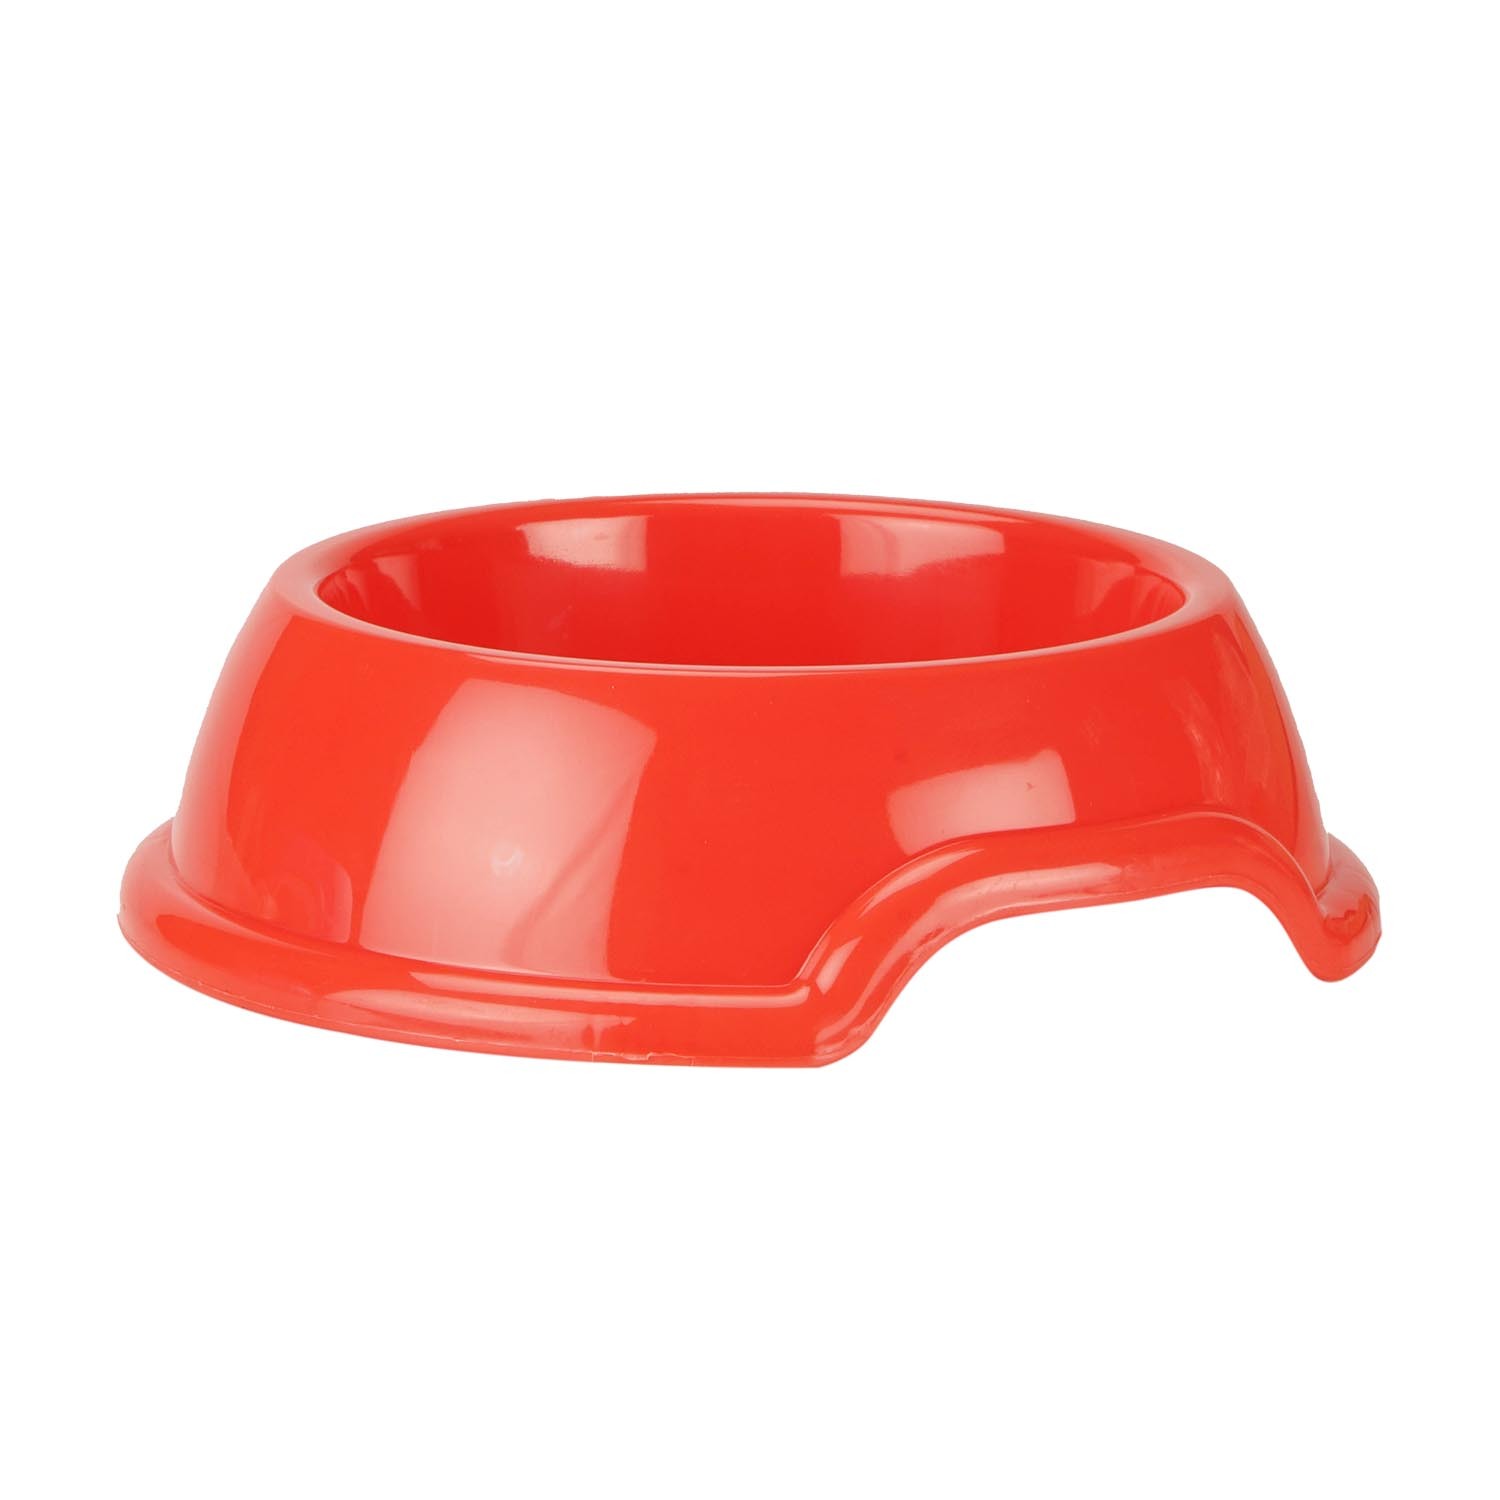 Plastic Pet Bowl - 15cm Image 1